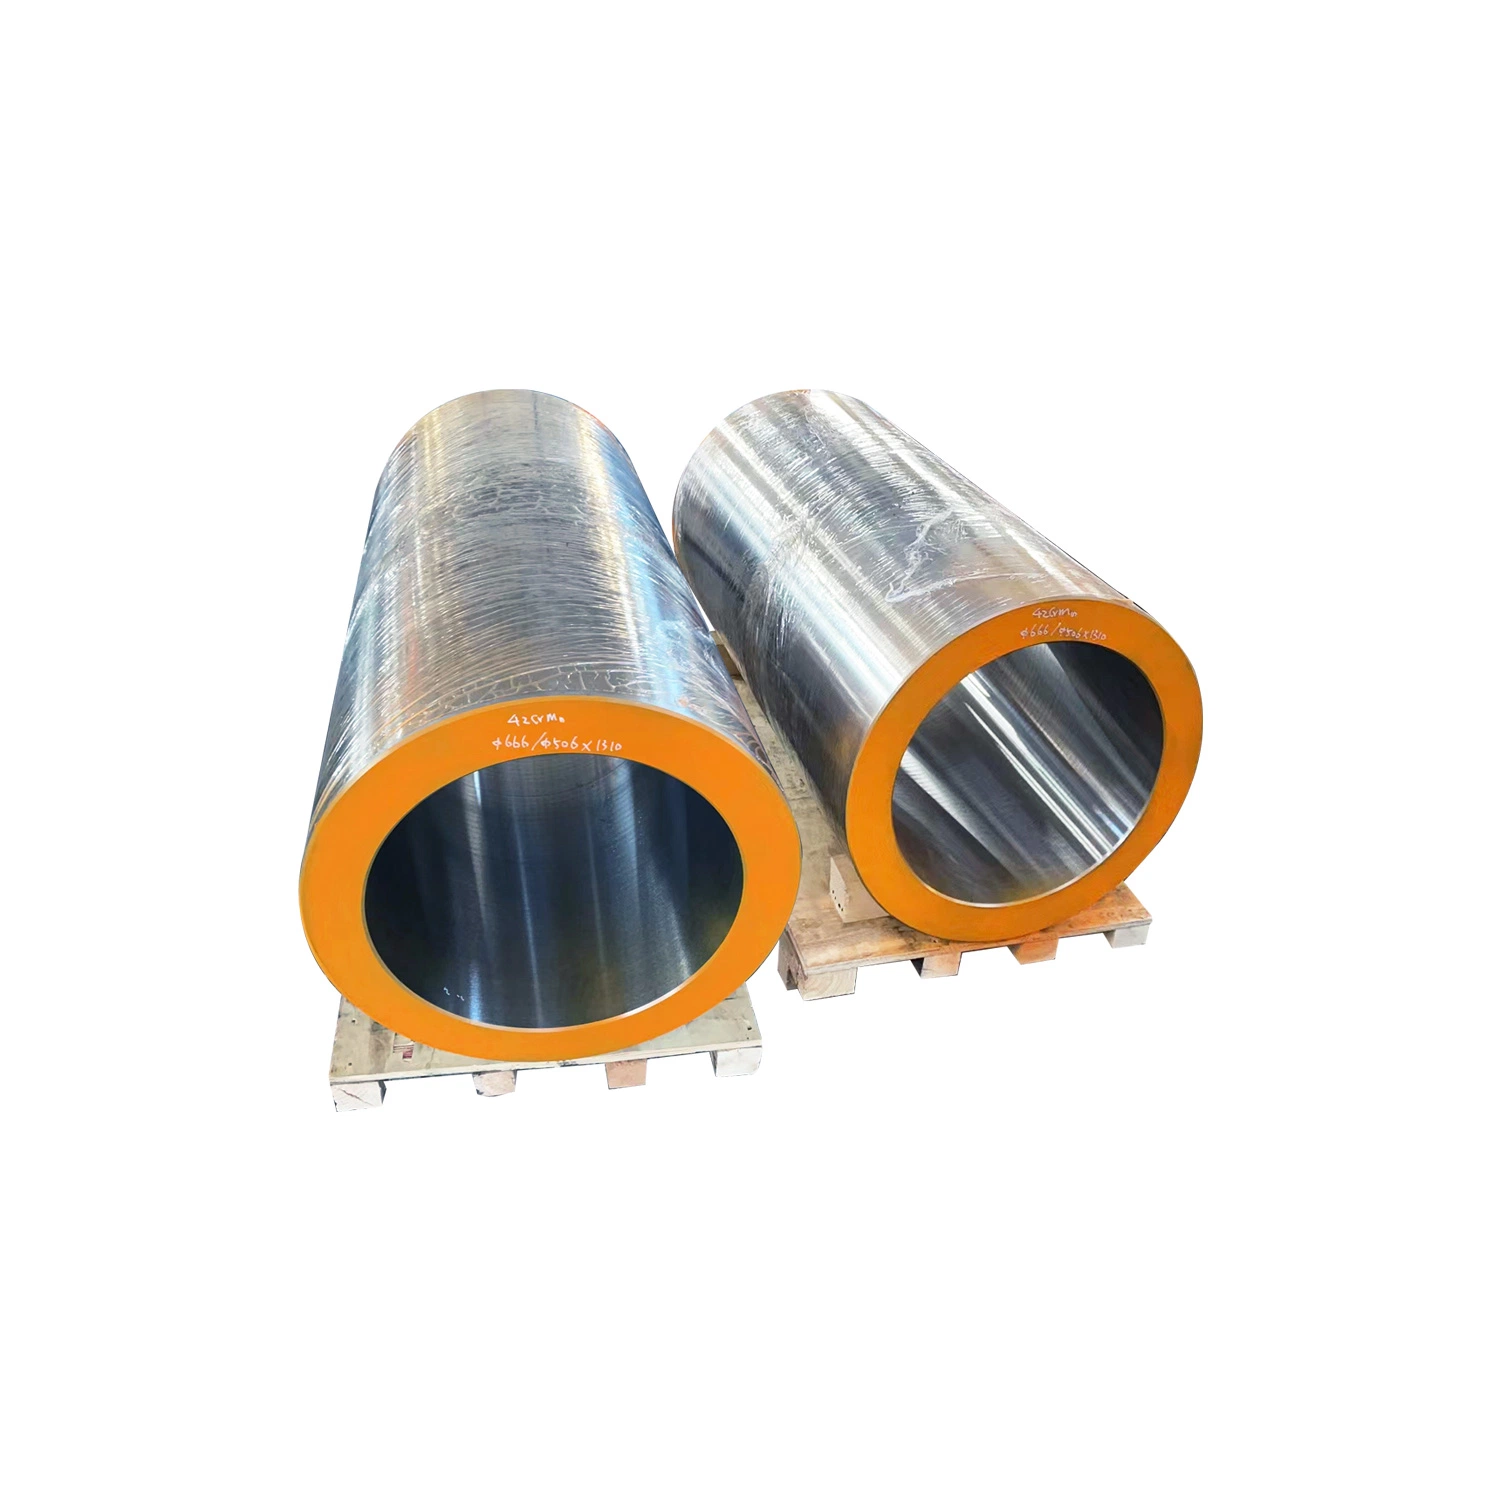 Fábrica de atacado tubo de forja de aço de alta qualidade para Venda ASTM 201 304 304L 316 316L tubo forjado em aço inoxidável sem costura